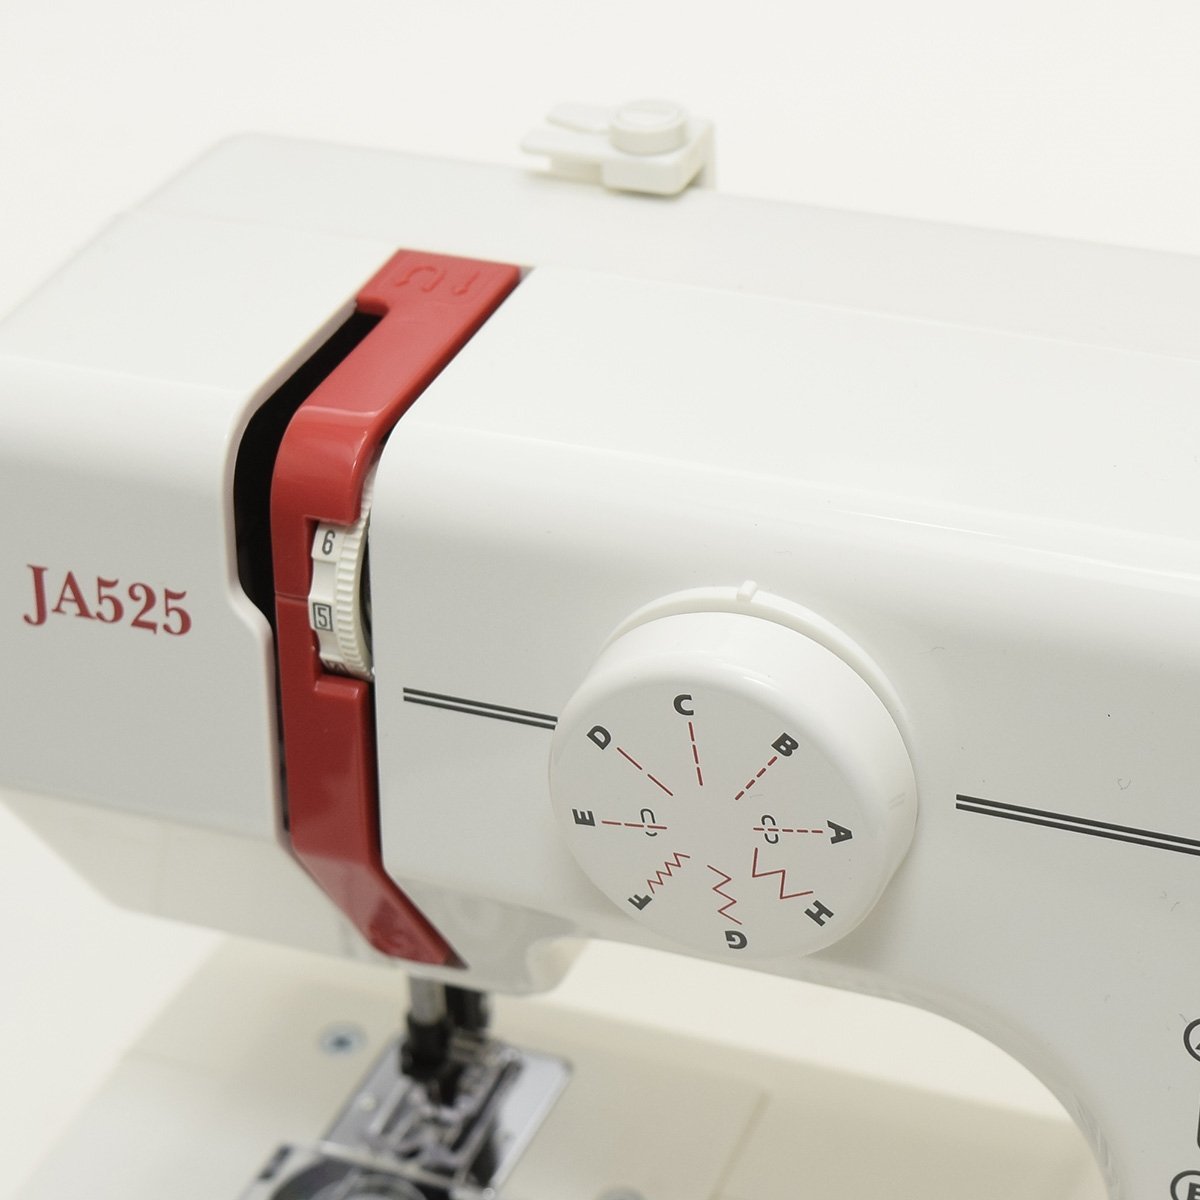 *502933 JANOME Janome швейная машина Sew D\'Lite электрический швейная машина JA525 электрический швейная машина compact швейная машина 